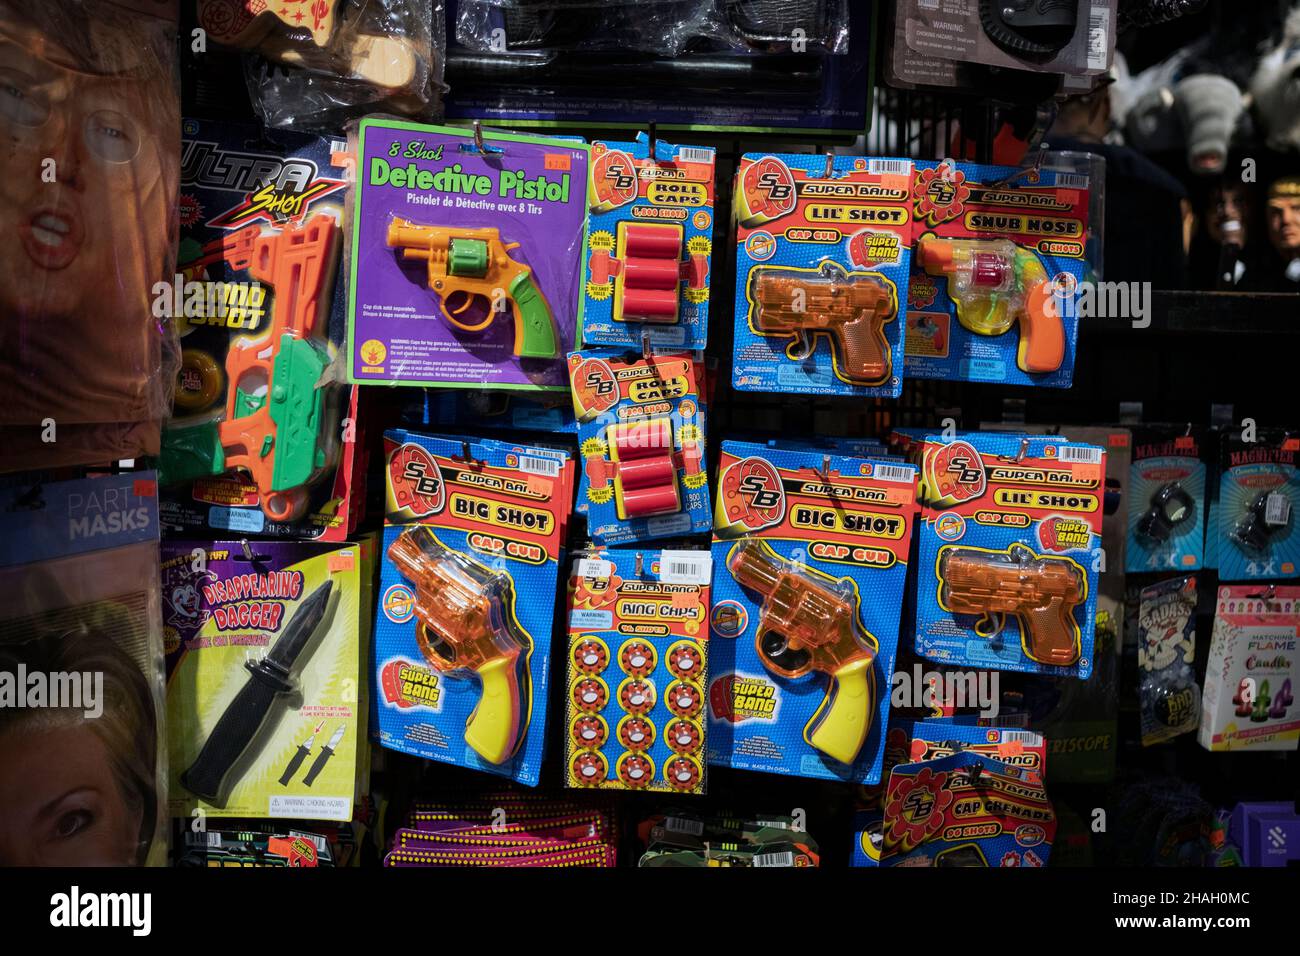 Mostra di pistole giocattolo e proiettili esposti al Halloween Adventure, un negozio di costumi e tchotchke nel villaggio che da allora è diventato un covid incidente. Foto Stock